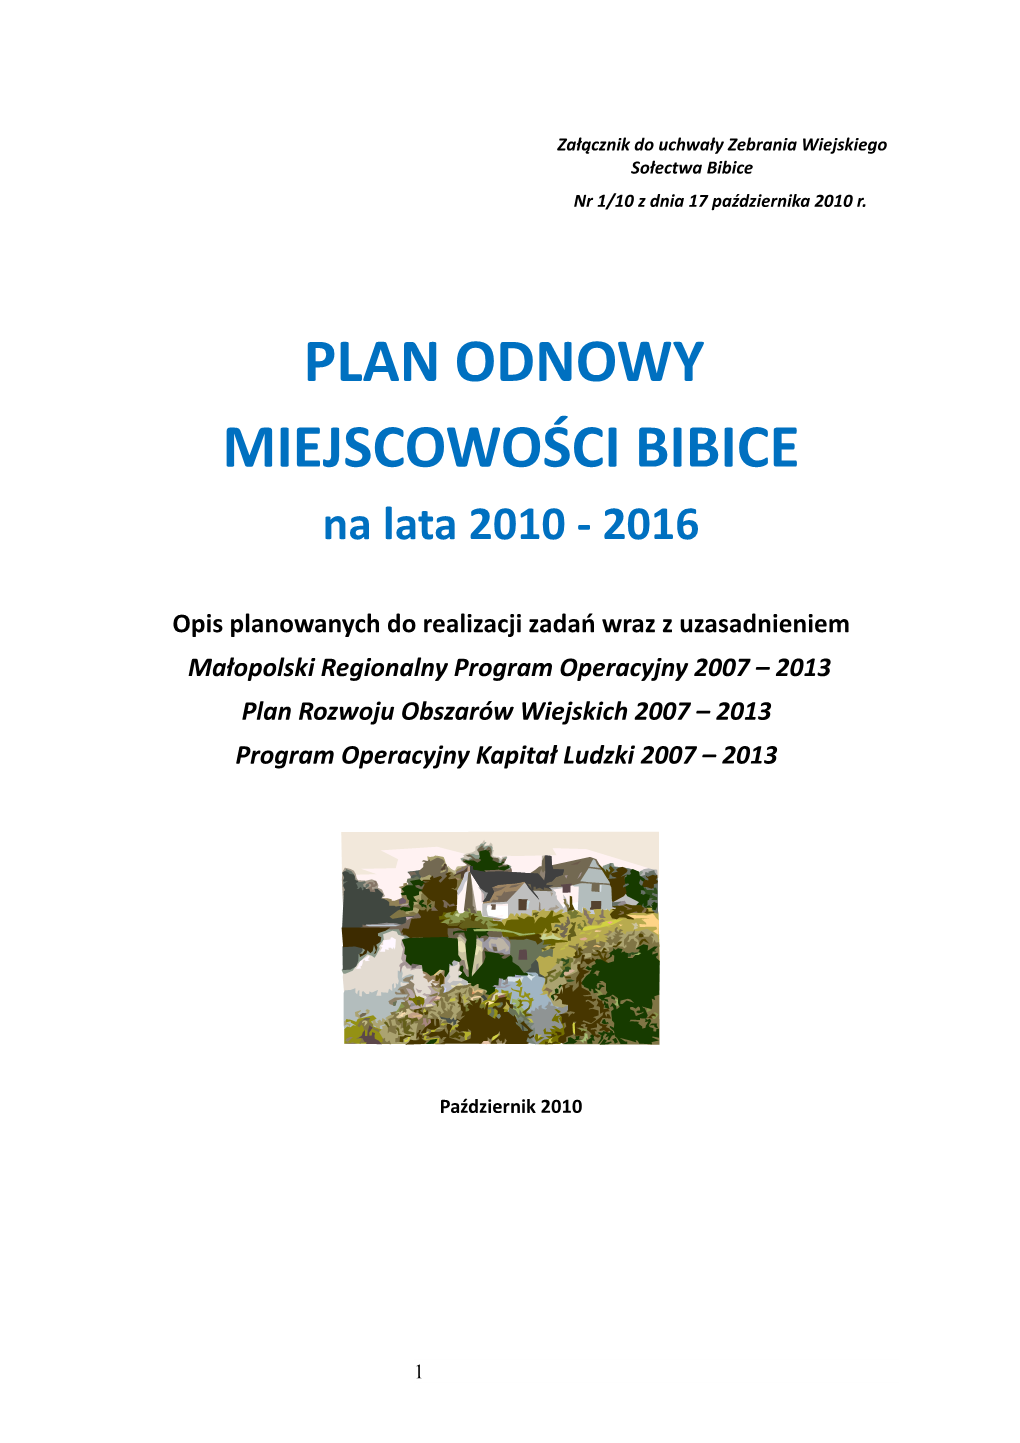 PLAN ODNOWY MIEJSCOWOŚCI BIBICE Na Lata 2010 - 2016